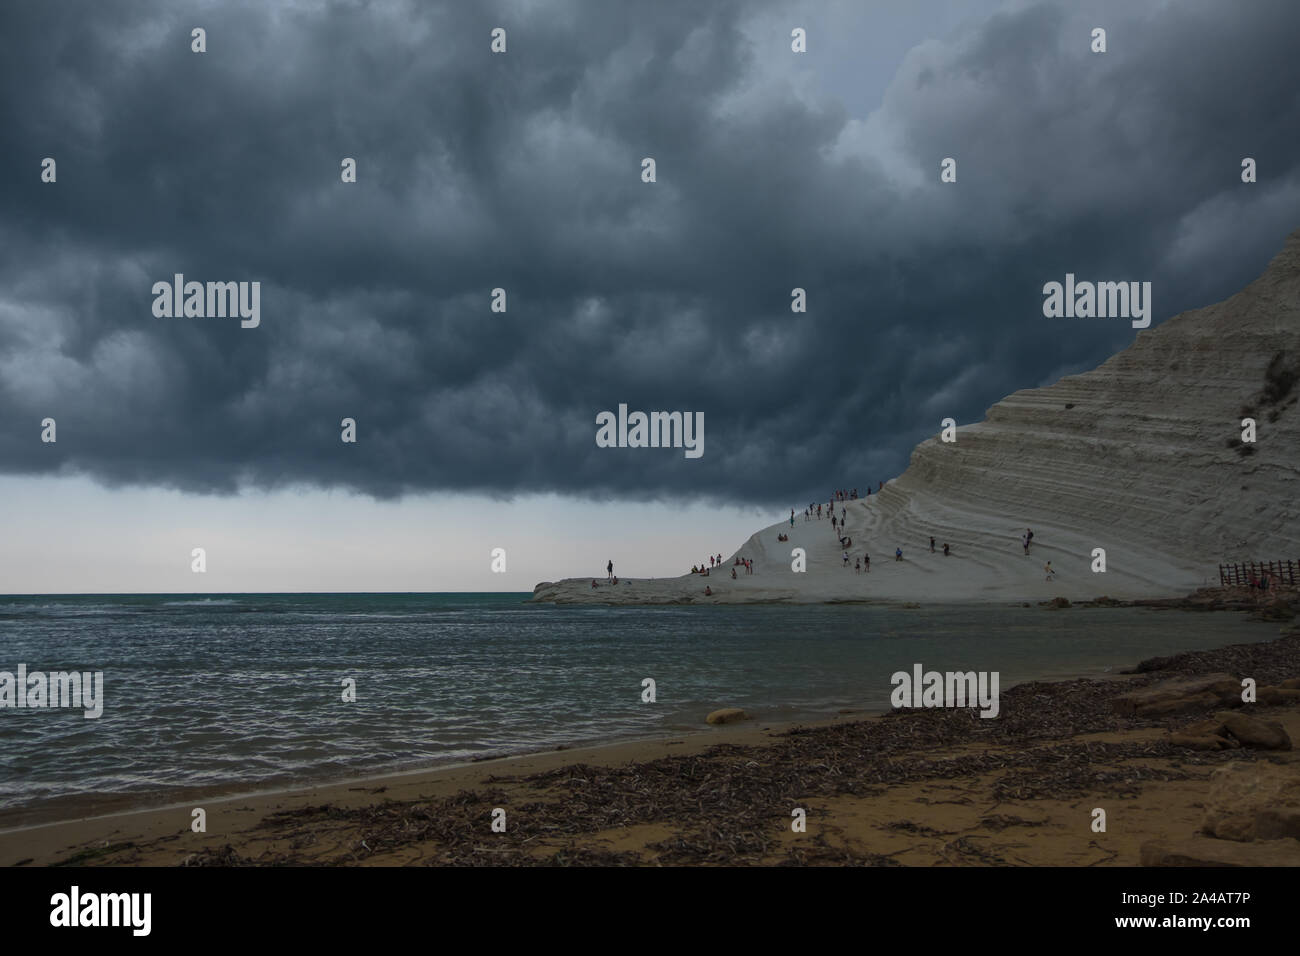 Jour de tempête avec des nuages gris dans le ciel, sur la plage touristique avec la formation en pierre blanche Banque D'Images